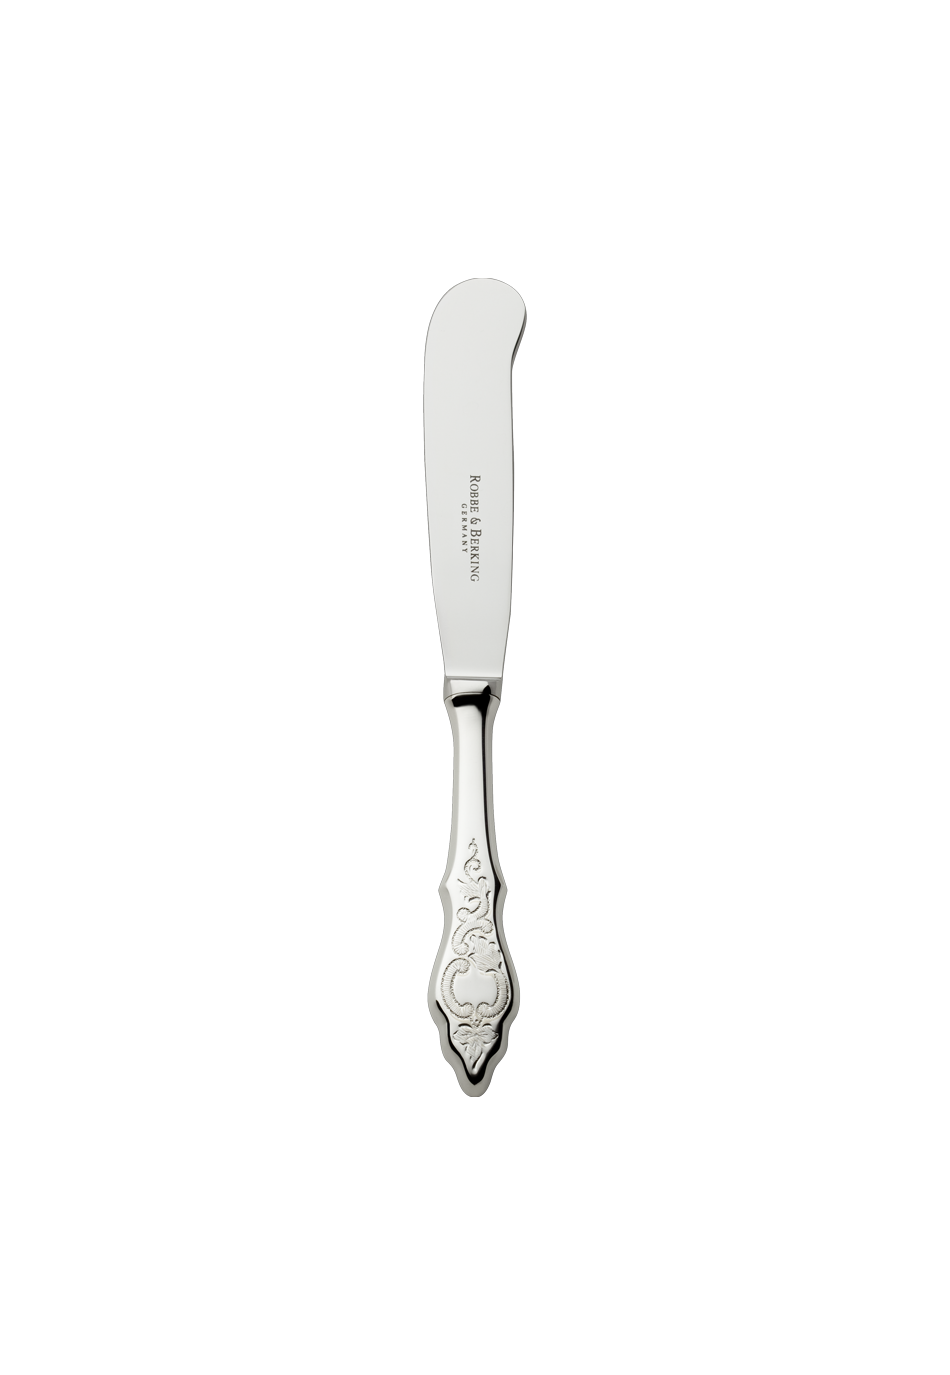 Ostfriesen Butter Knife (18/8 stainless steel)